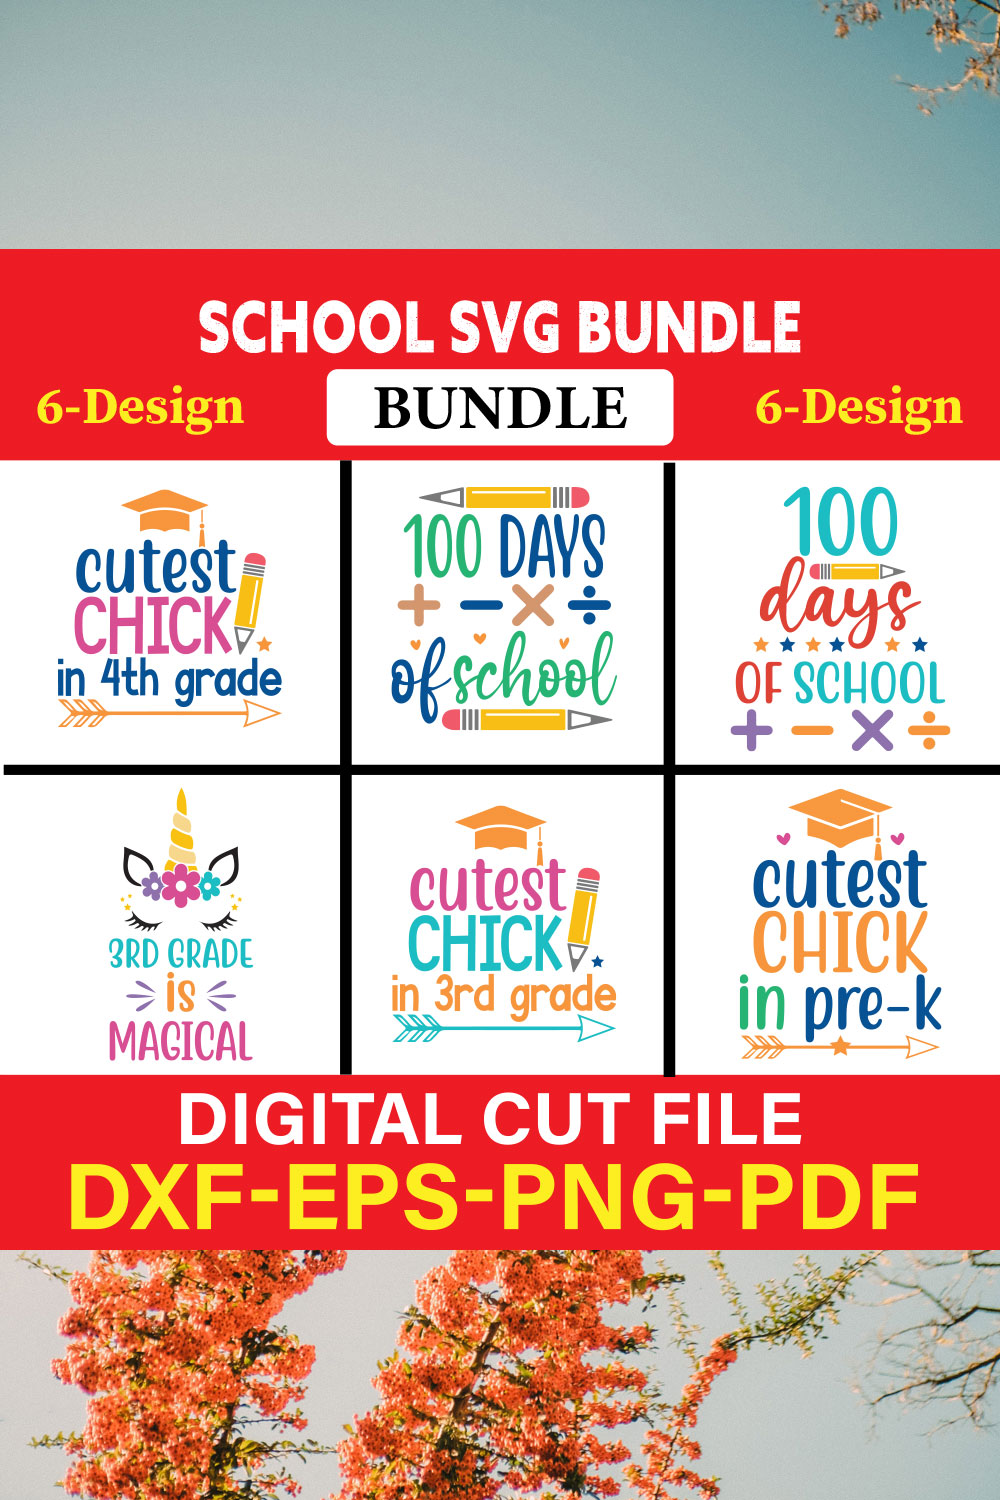 School svg bundle T-shirt Design Bundle Vol-6 pinterest preview image.